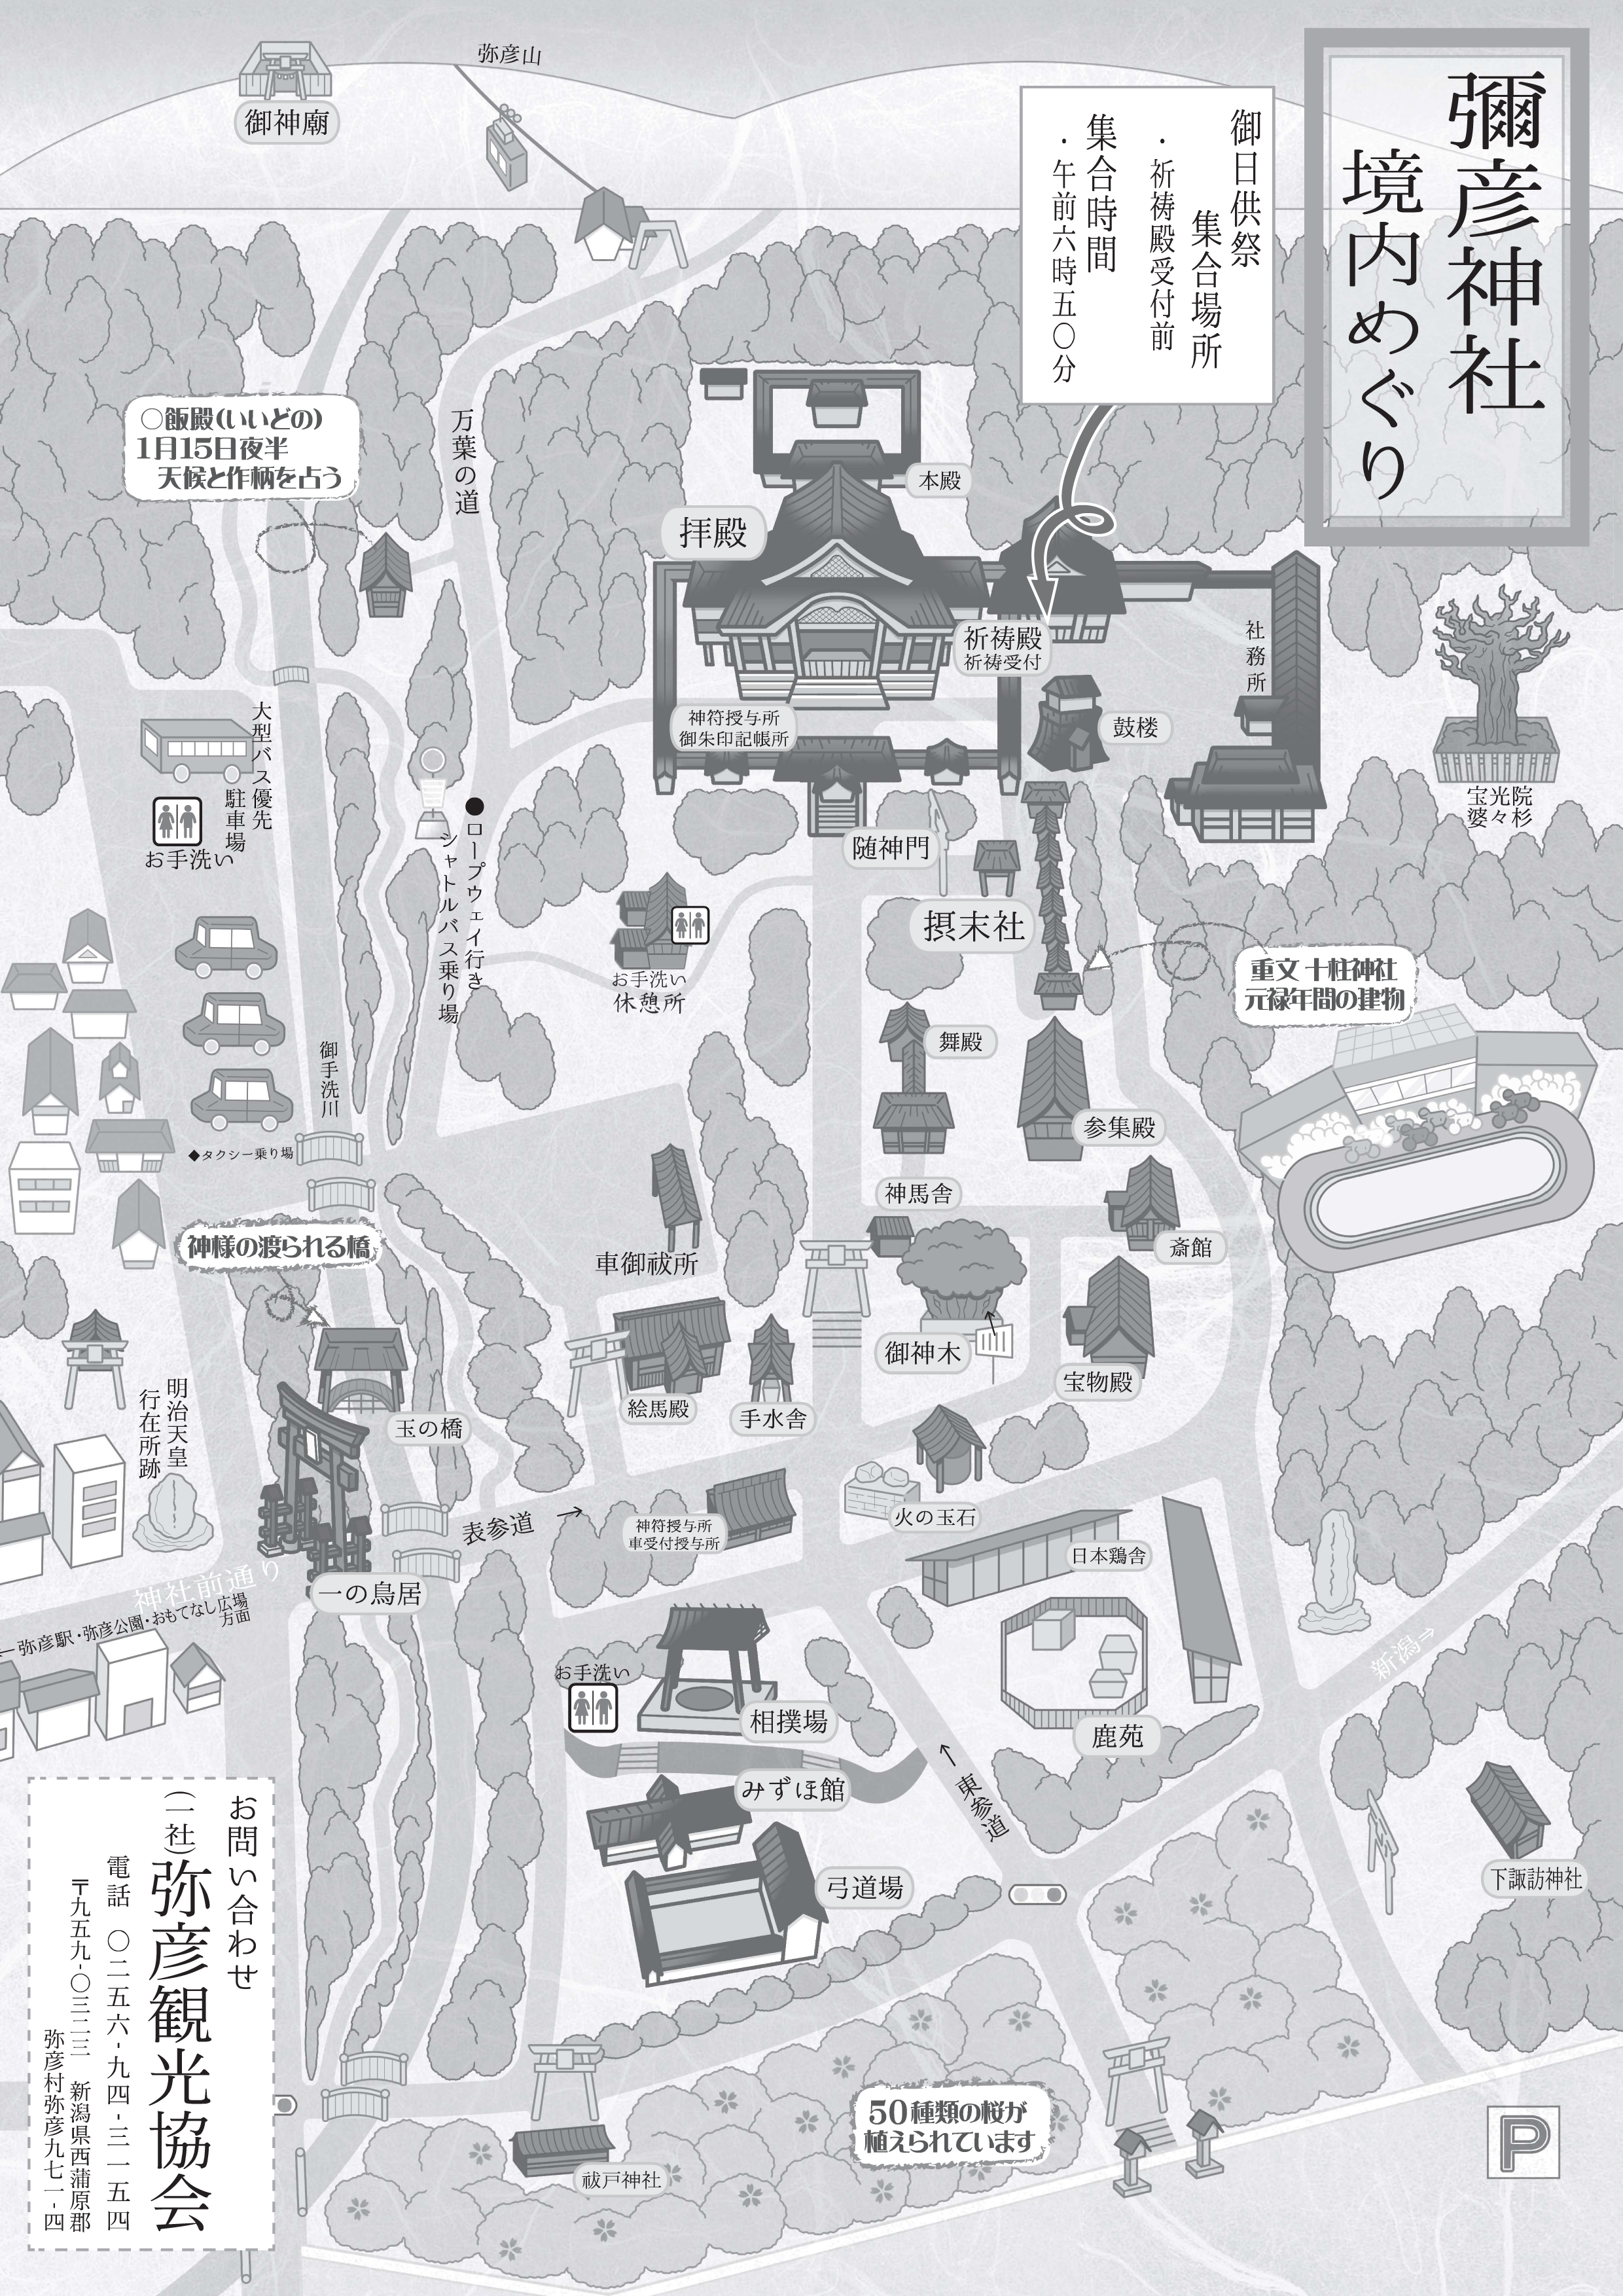 彌彦神社境内めぐりマップ＆おやひこさま系図 神社境内のガイドマップと神様の解説